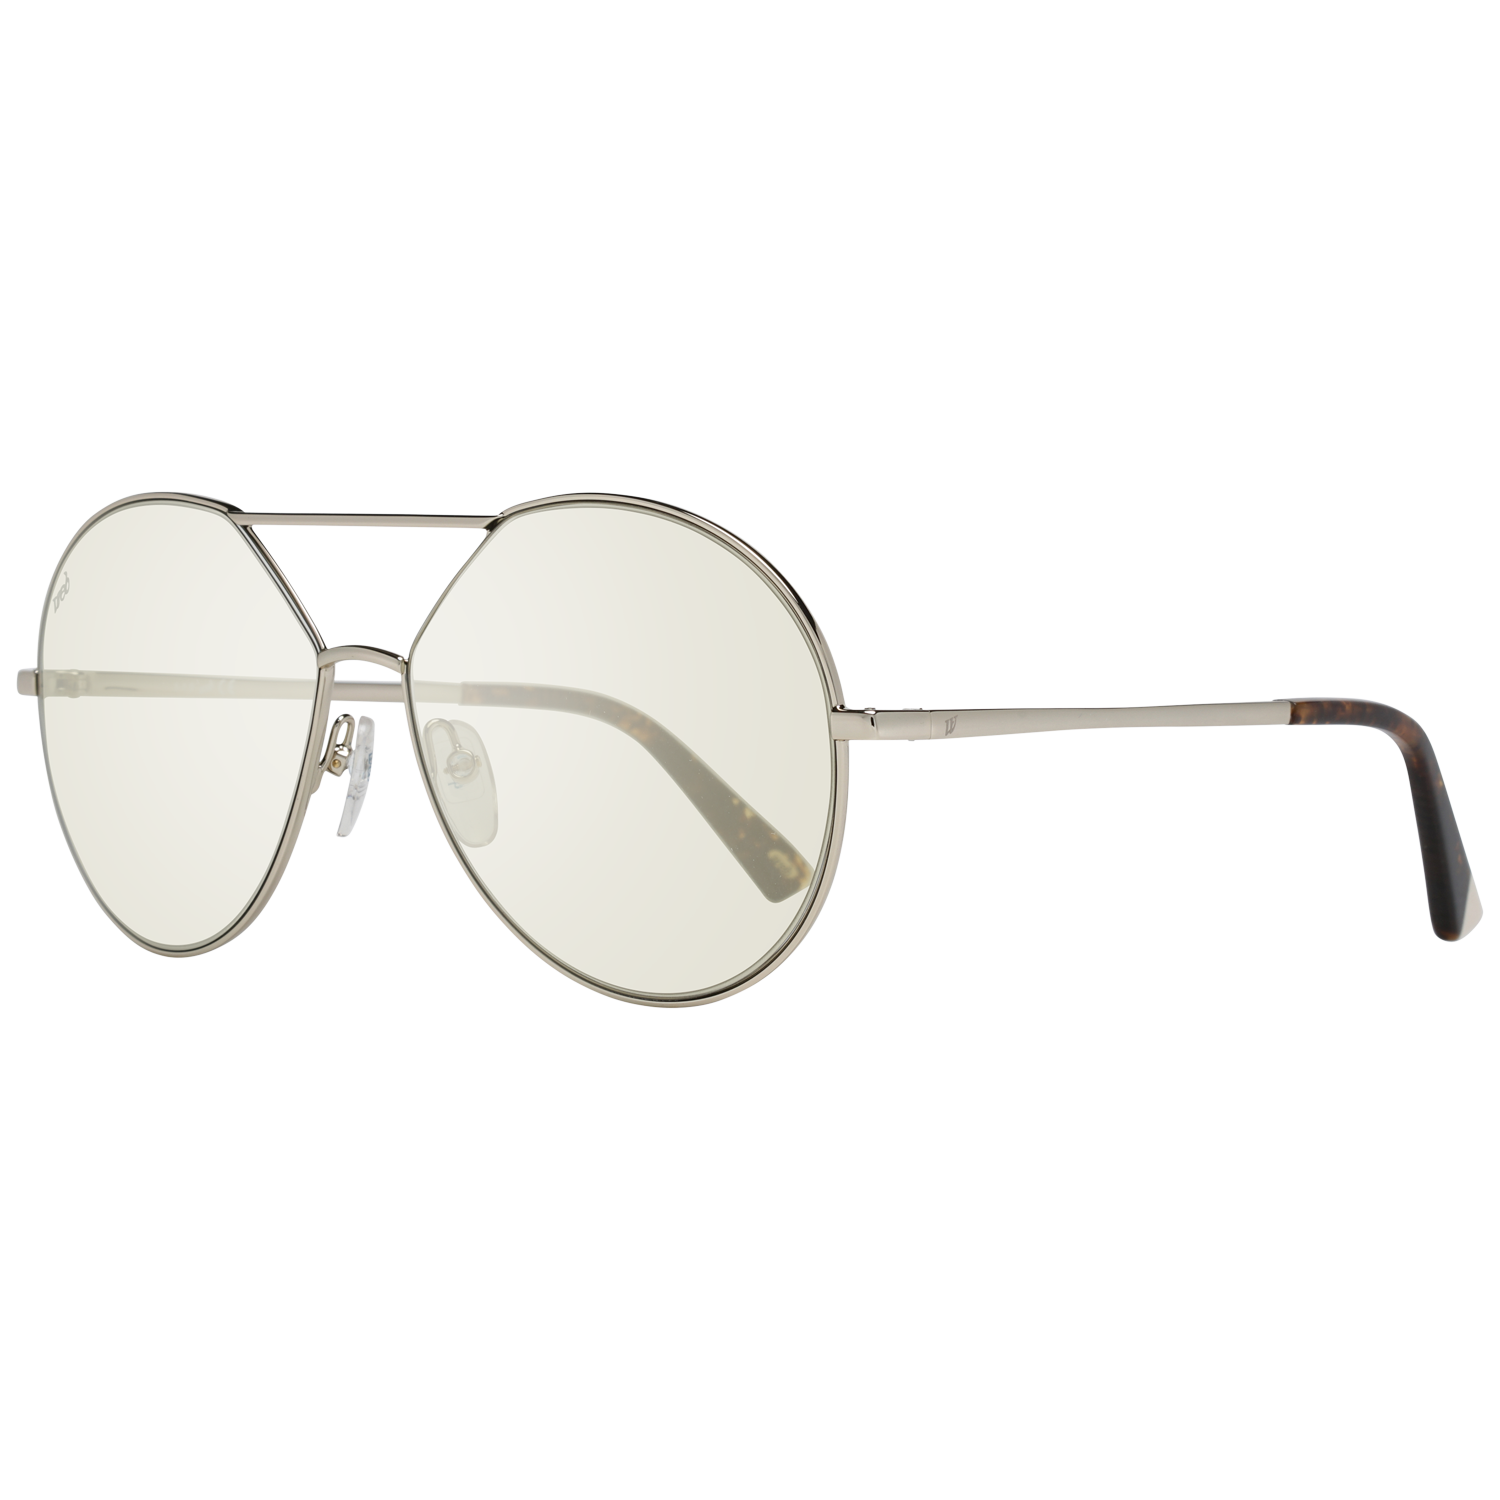 Web Sunglasses Web Sunglasses WE0286 32Q 57 Eyeglasses Eyewear UK USA Australia 